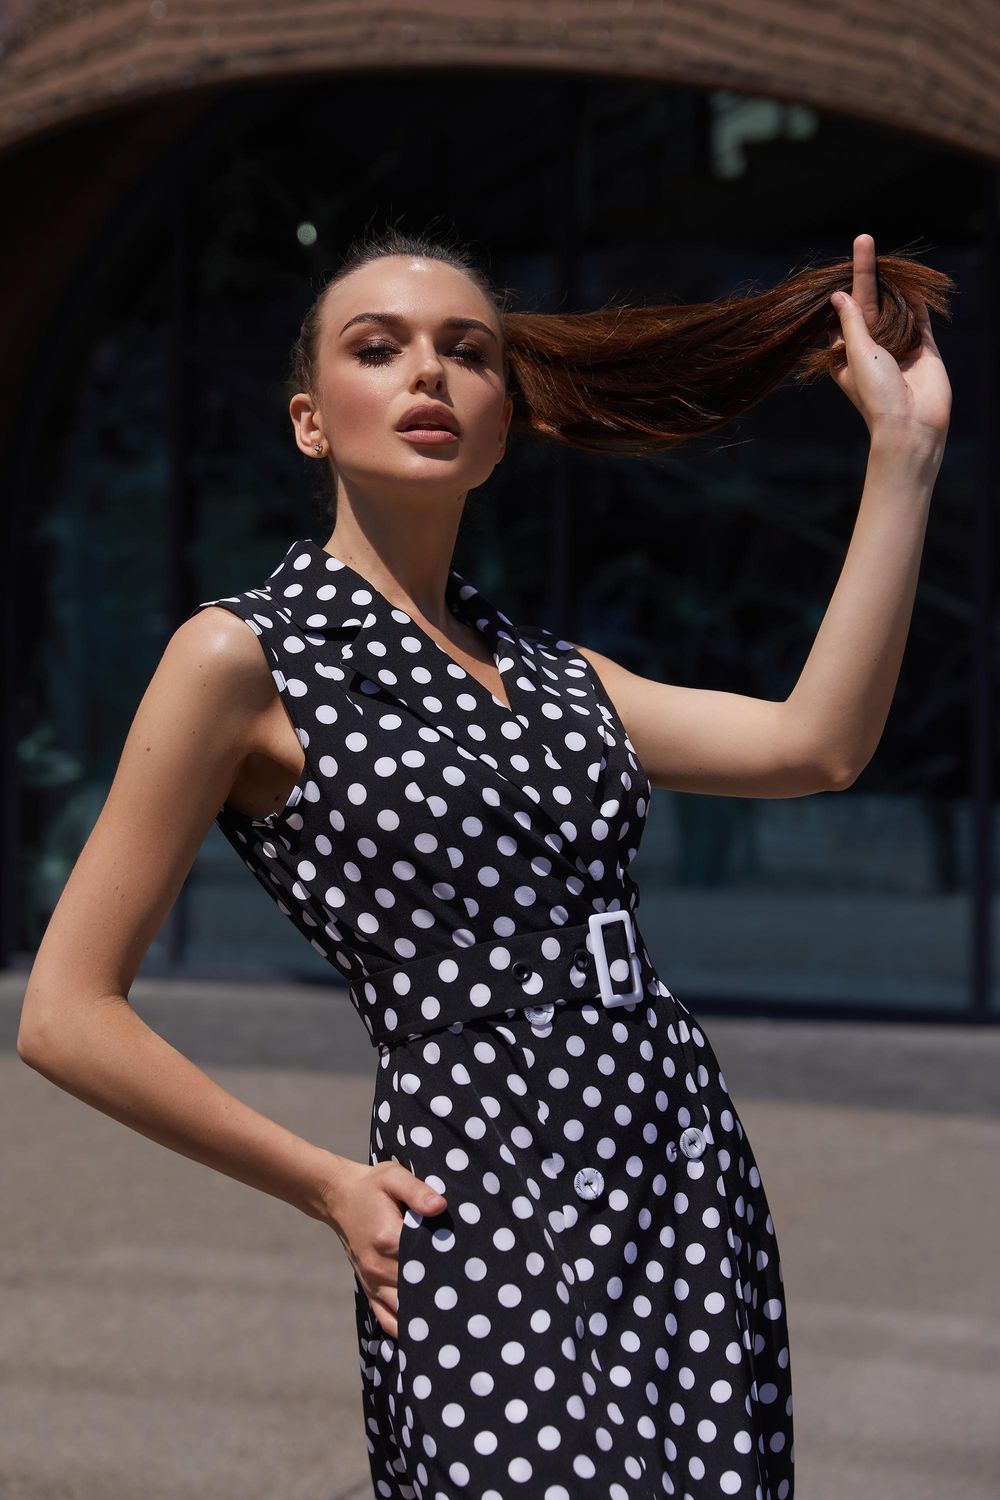 Елегантне літнє плаття з запахом в горошок чорне - фото